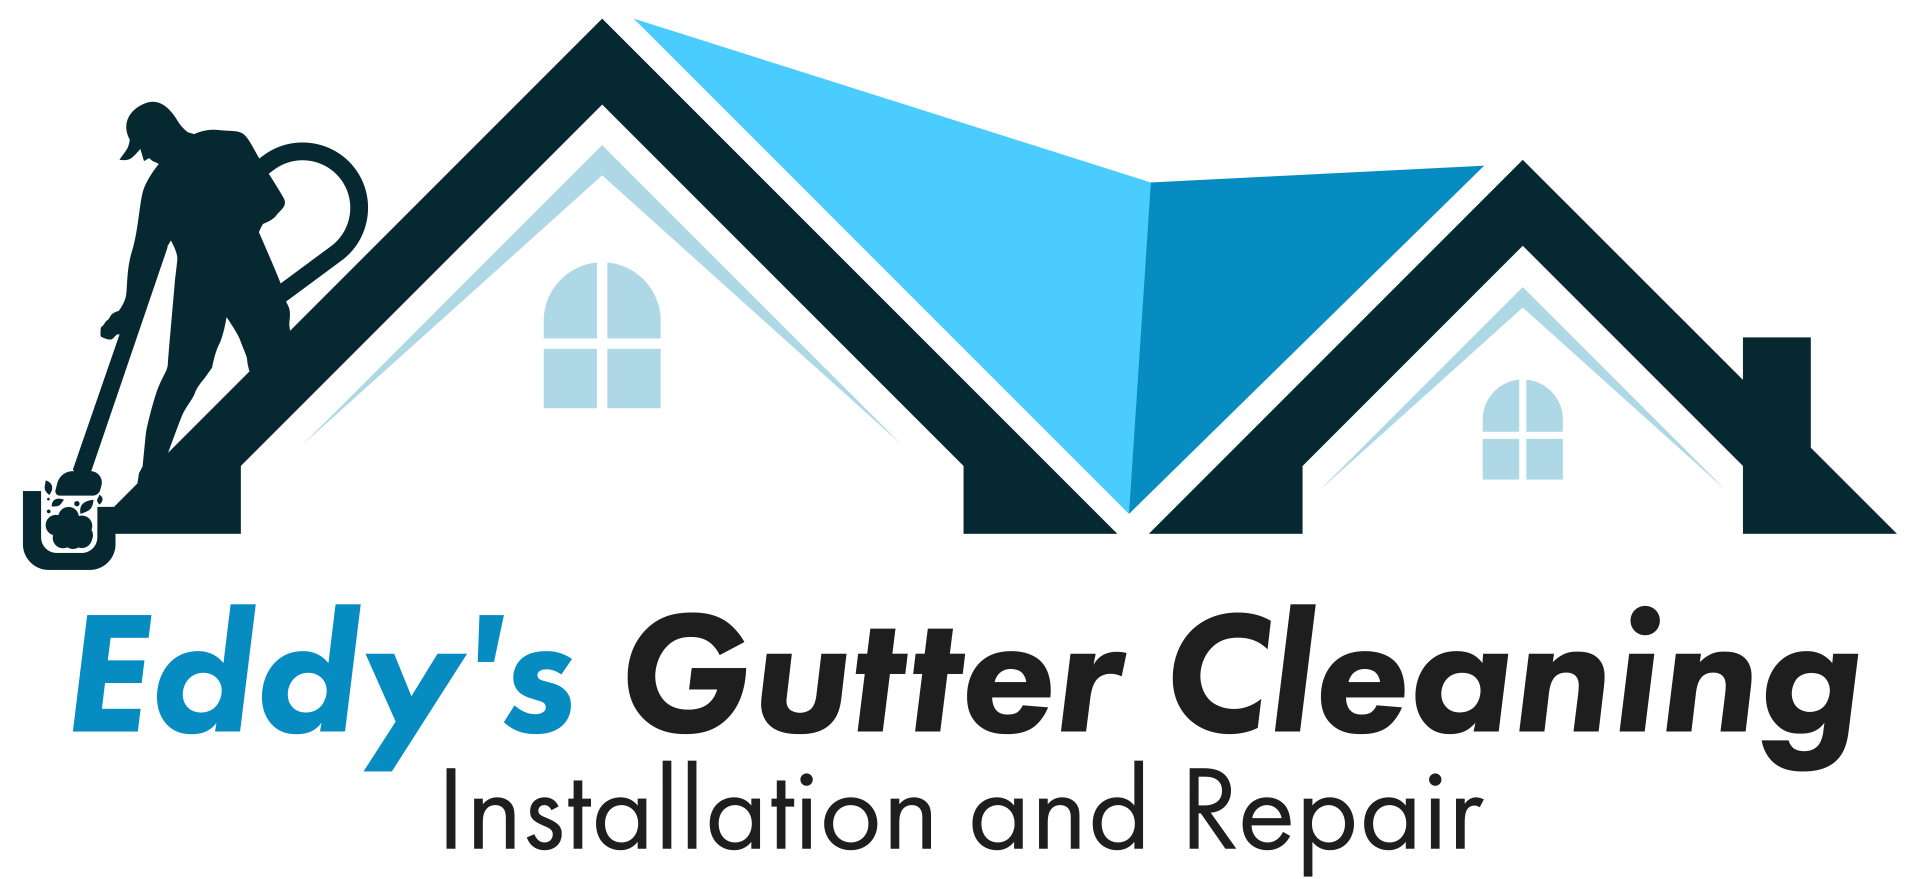 Gutter Service in Pawtucket, RI | Eddy's Gutter Cleaning LLC